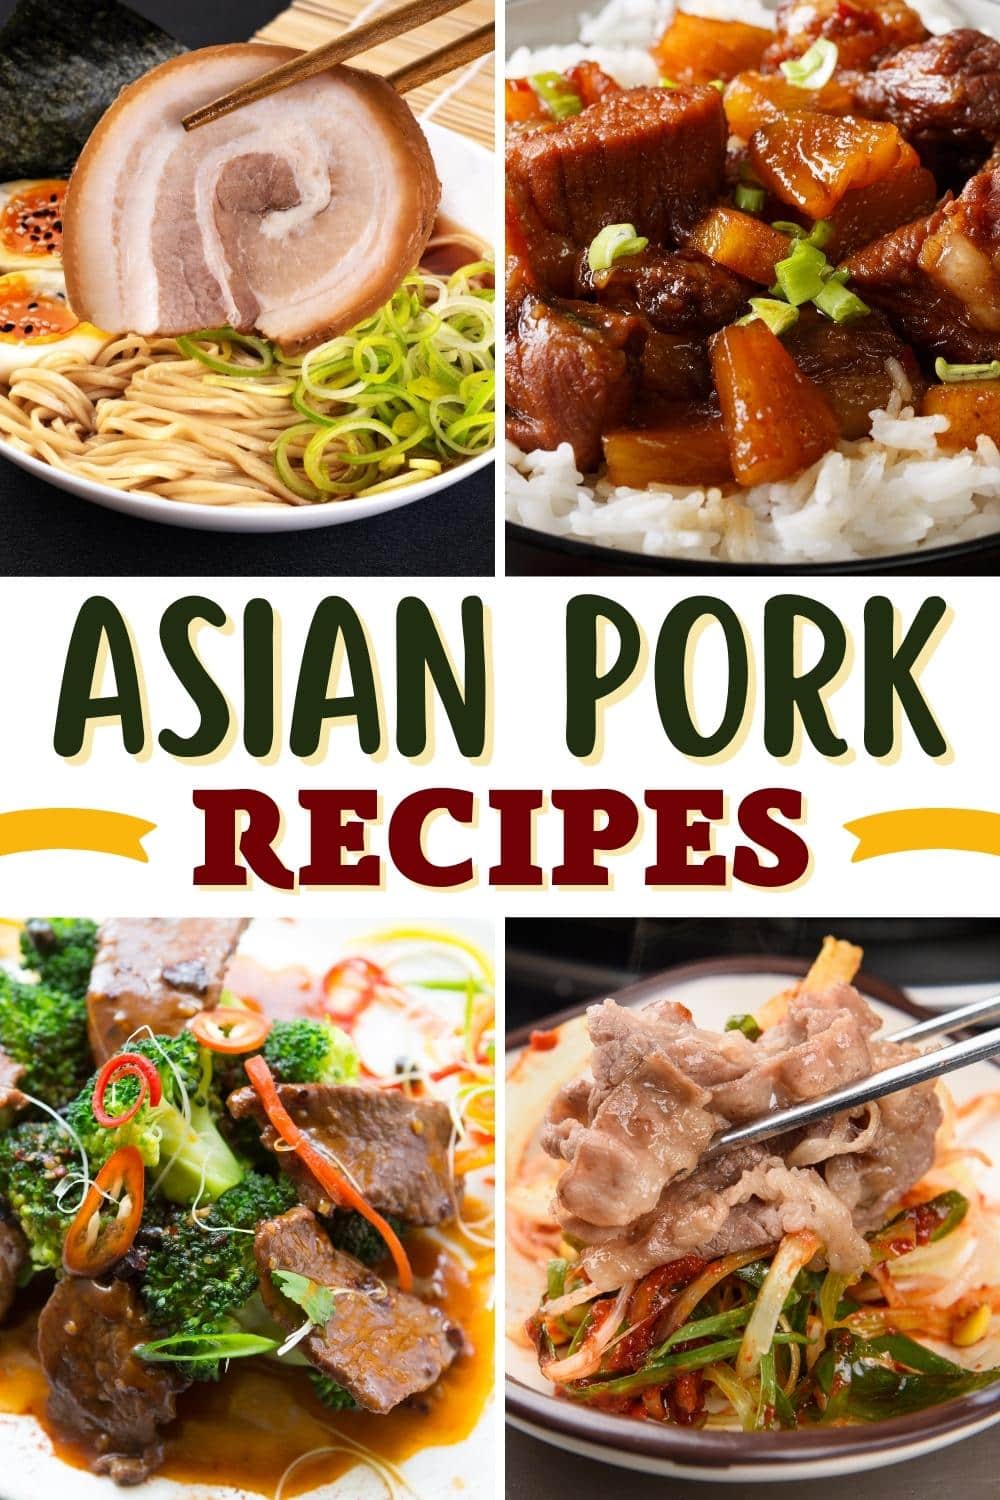 Asian Pork Recipes